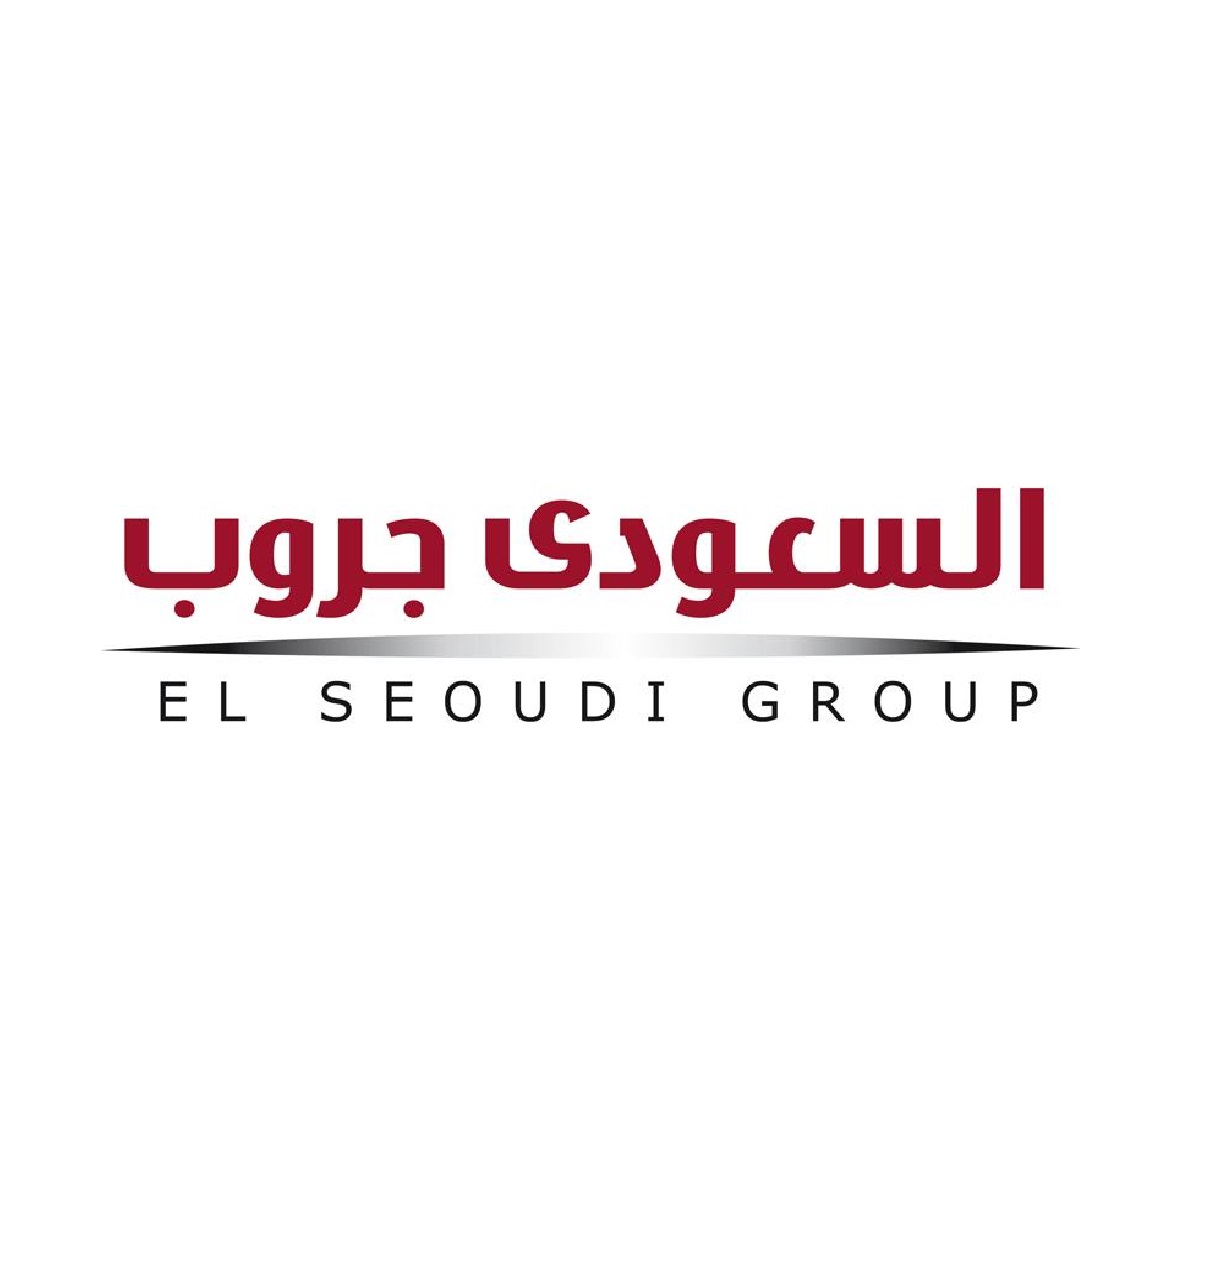 El Seoudi group